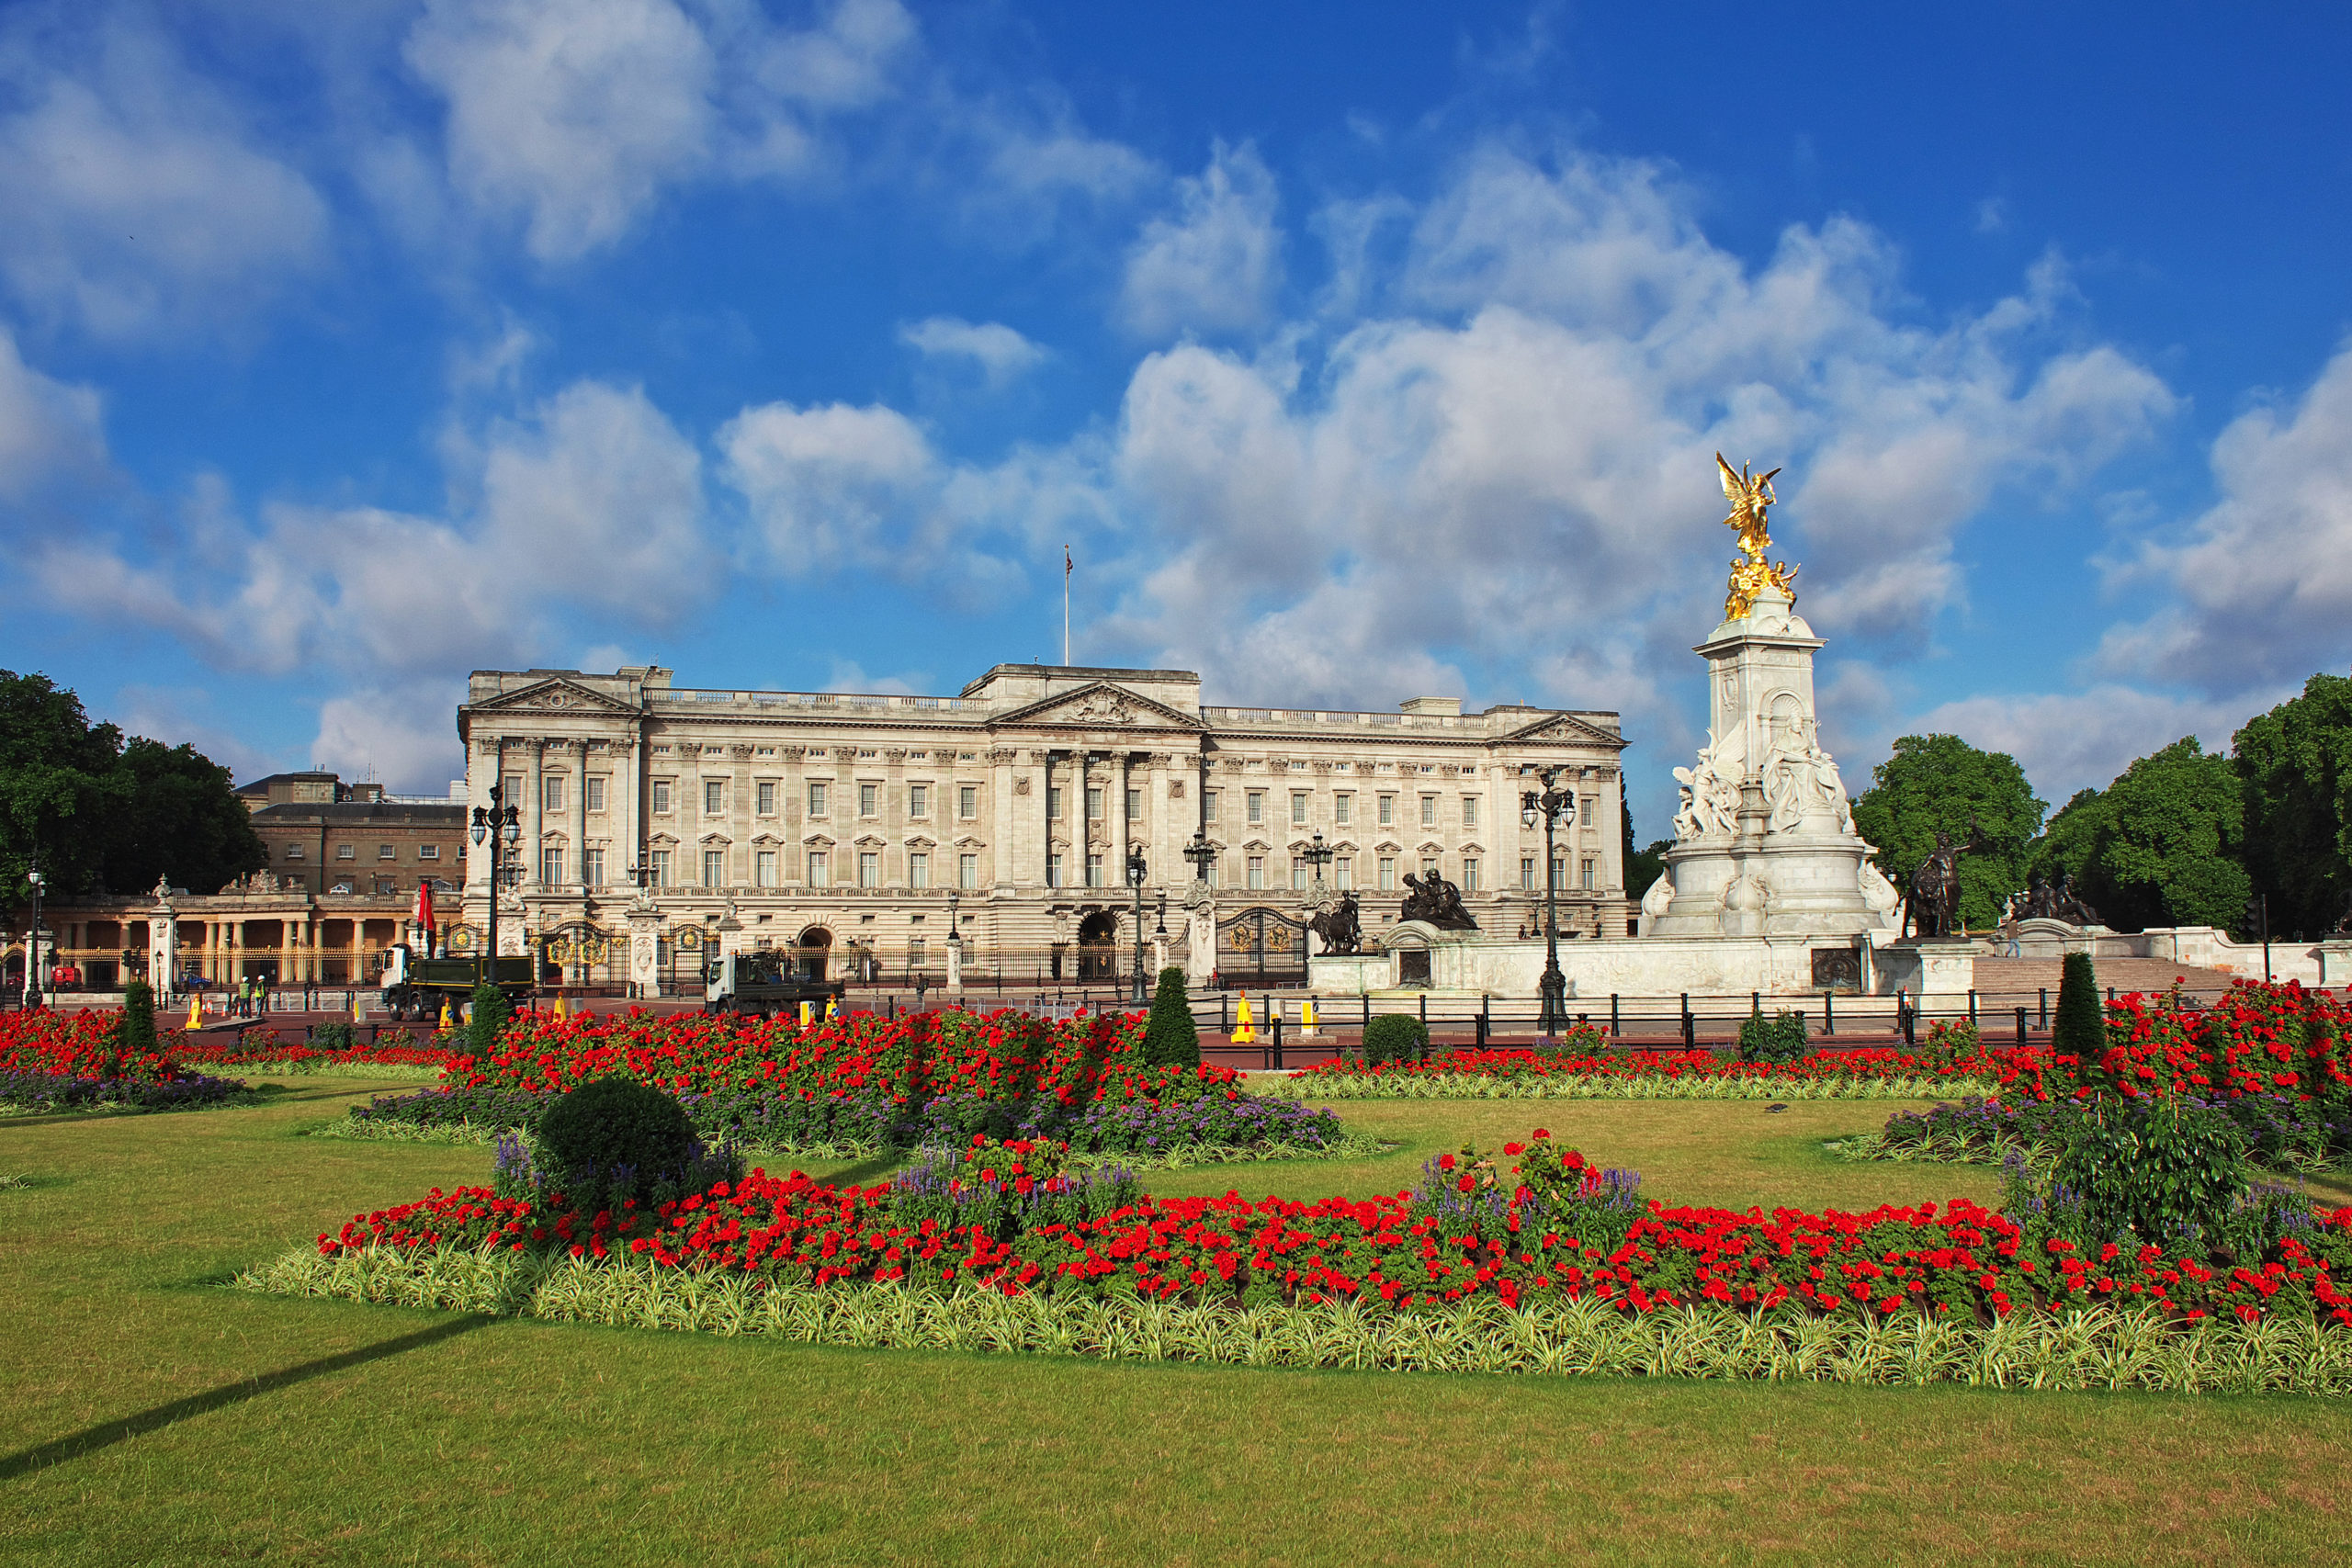 Buckingham palace in London city, England, UK